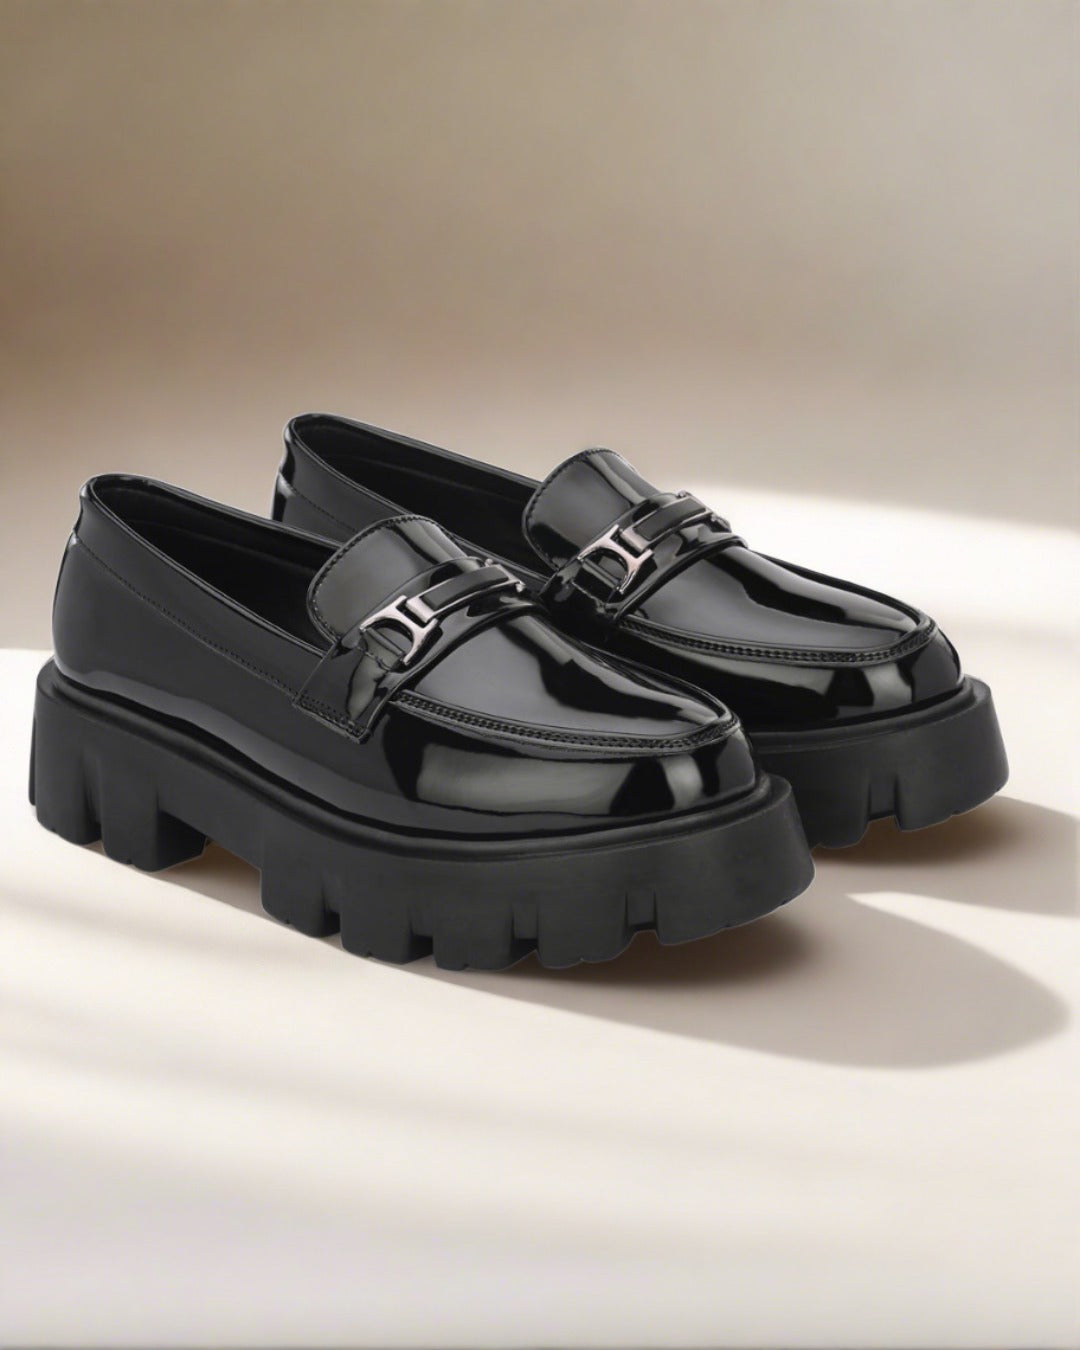 Attitudist Black Super Glossy Horsbit High Heel Slip-On Shoes For Men